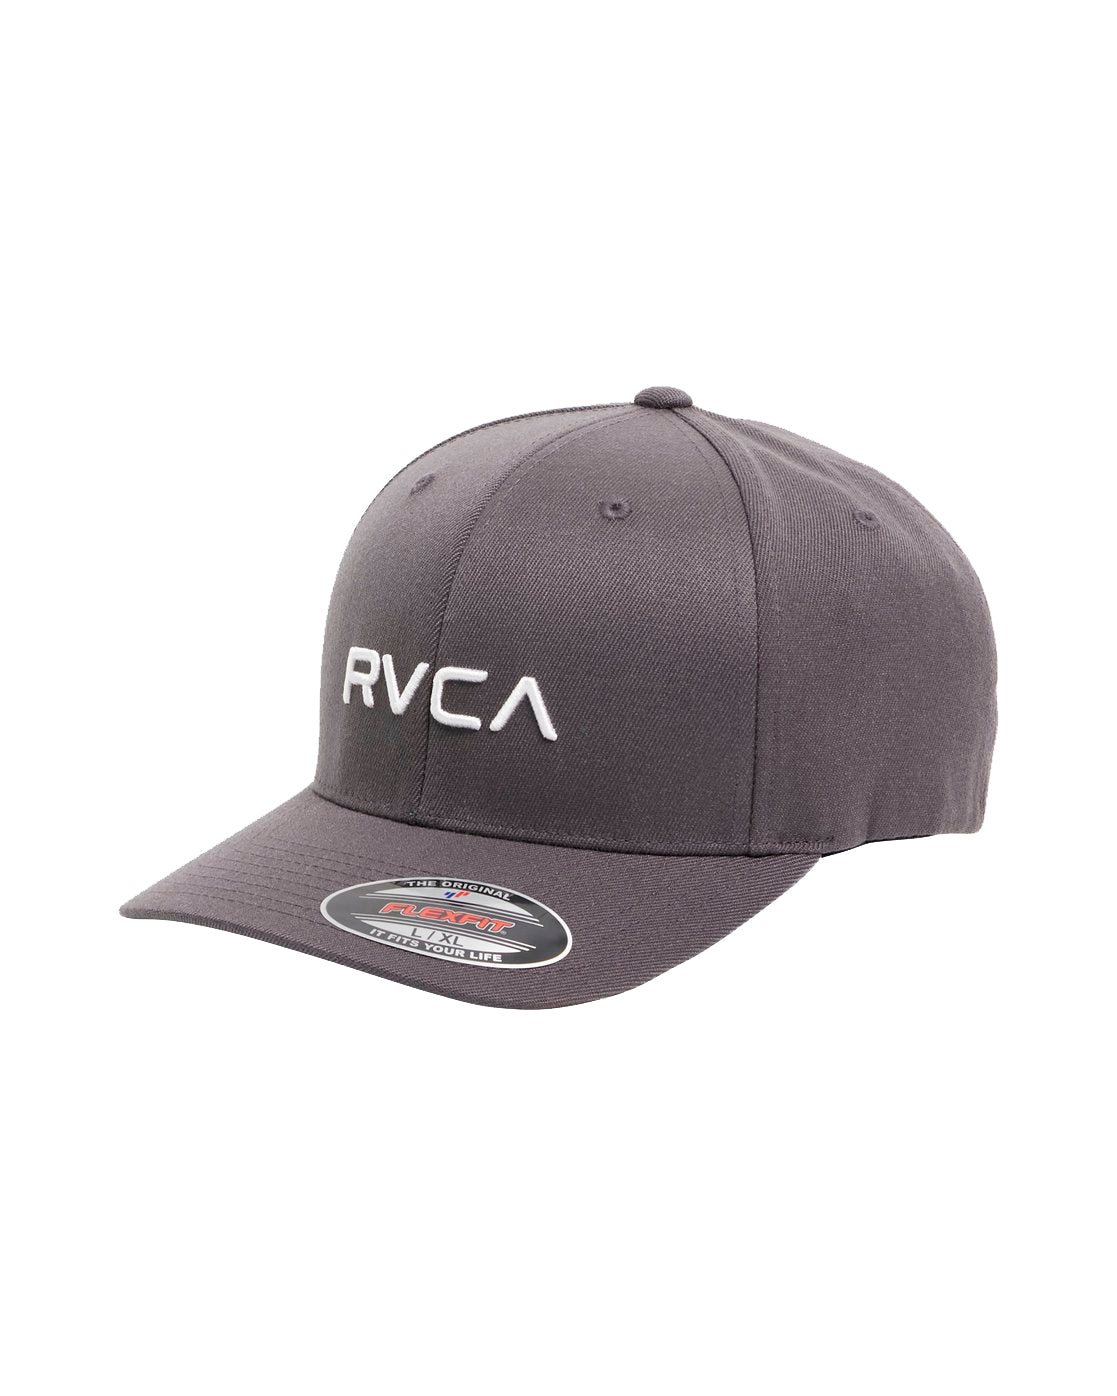 RVCA Flex Fit Hat DGY S/M